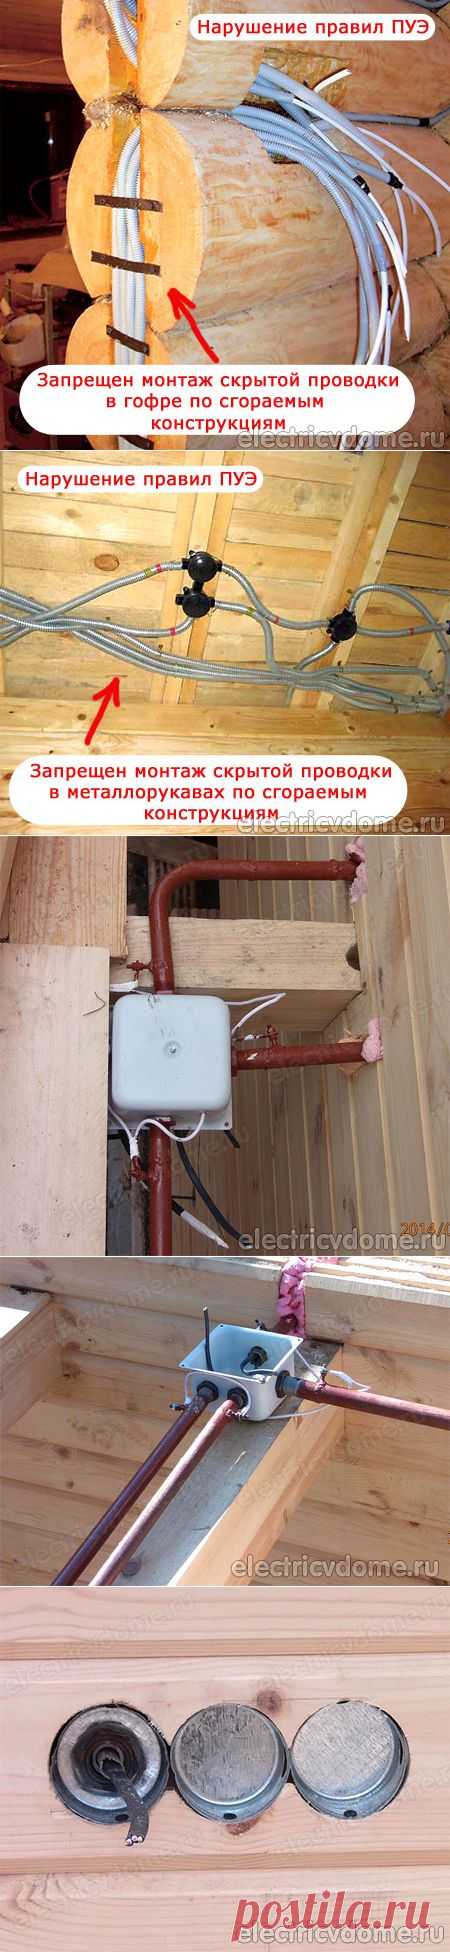 Как выполнить монтаж электропроводки в деревянном доме. Скрытая электропроводка в деревянном доме по правилам ПУЭ